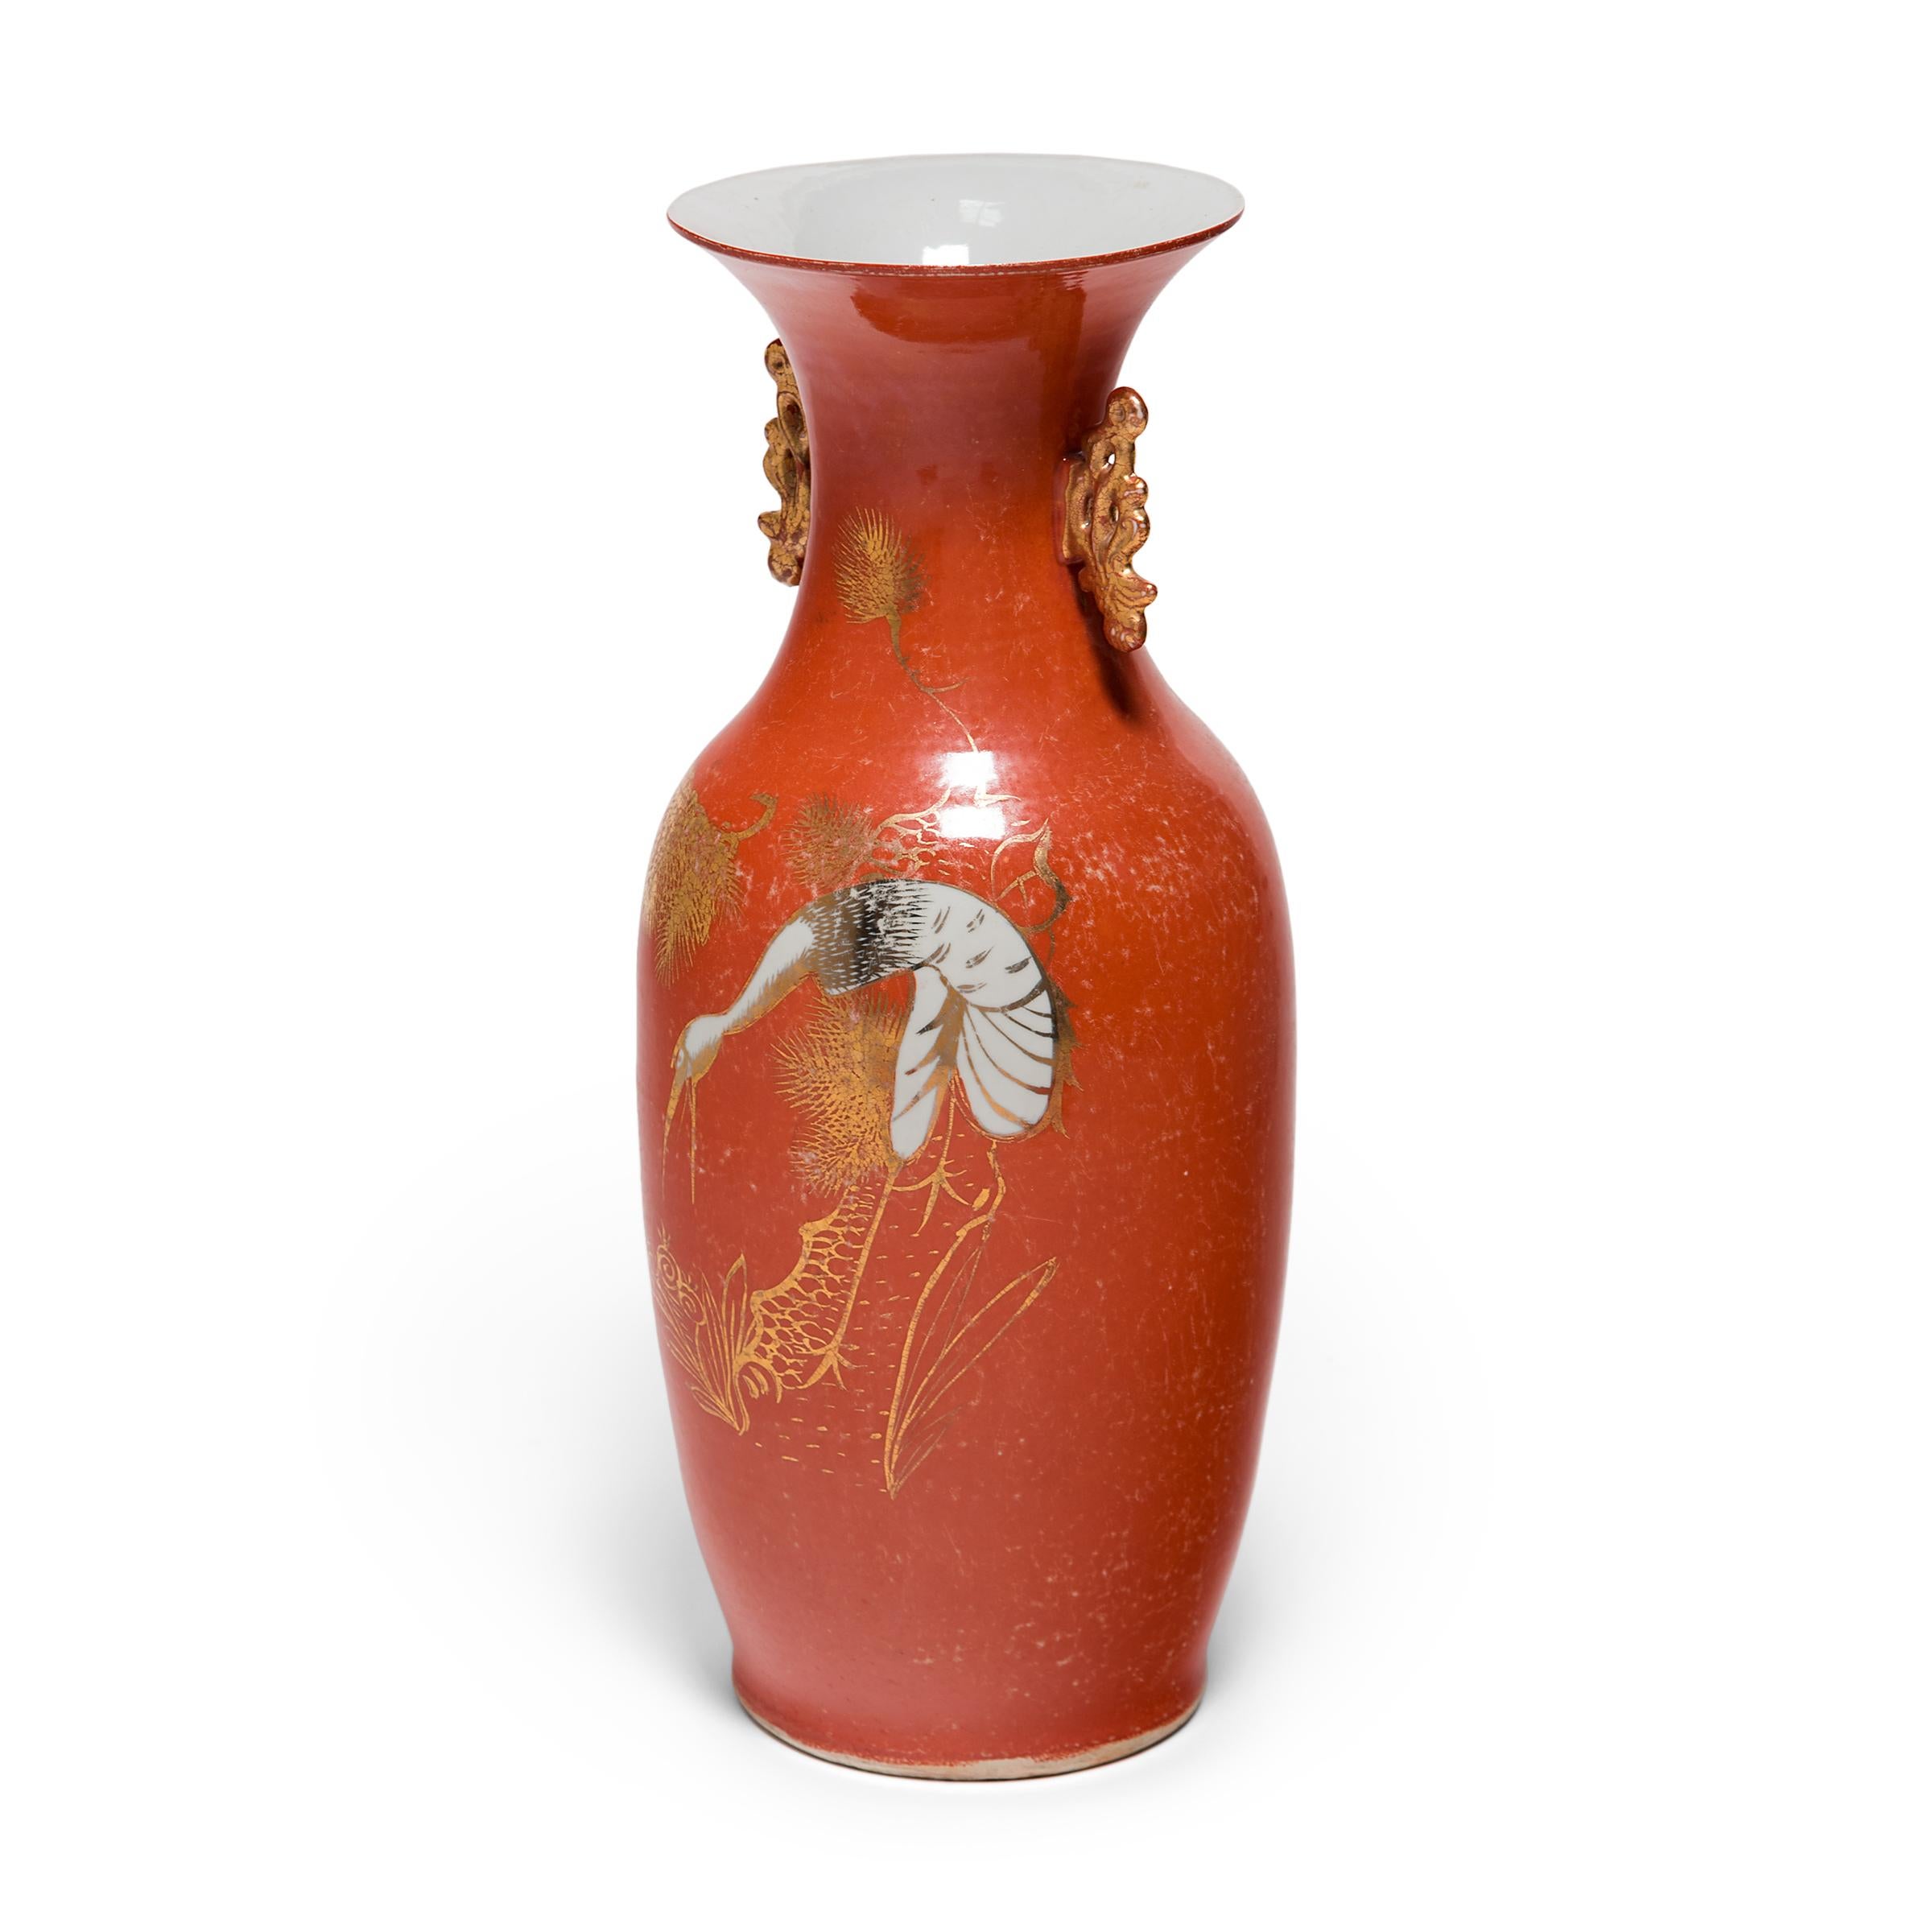 S'inspirant de la forme durable de la queue du phénix qui remonte à l'âge du bronze en Chine, ce vase en porcelaine des années 1920 présente les lignes sinueuses et le raffinement doré qui ont contribué à définir le style Art déco du début du XXe